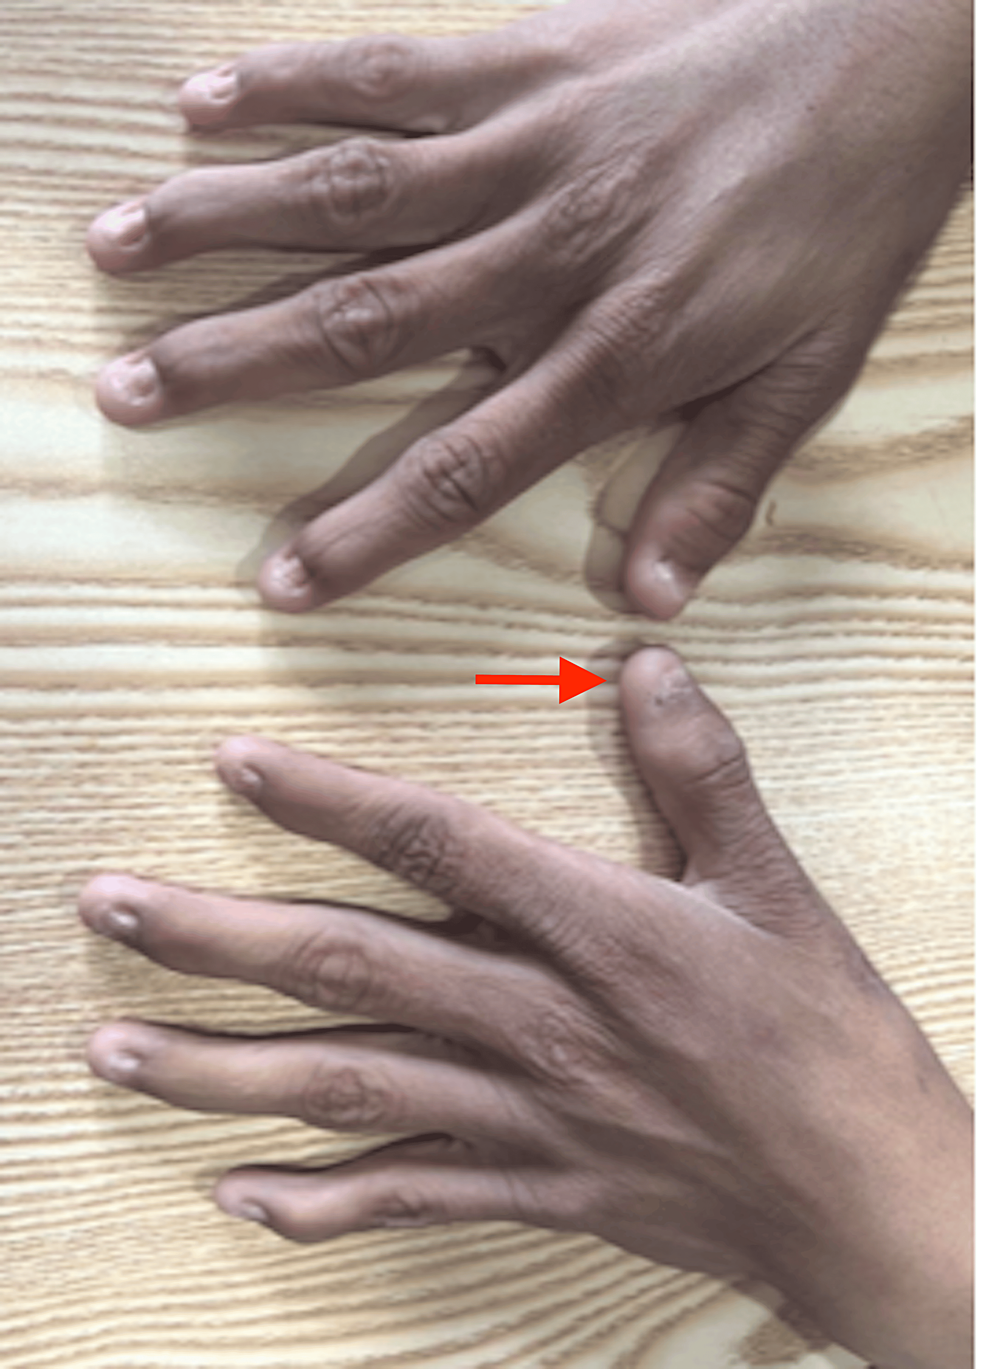 nail-patella-syndrome - DocCheck